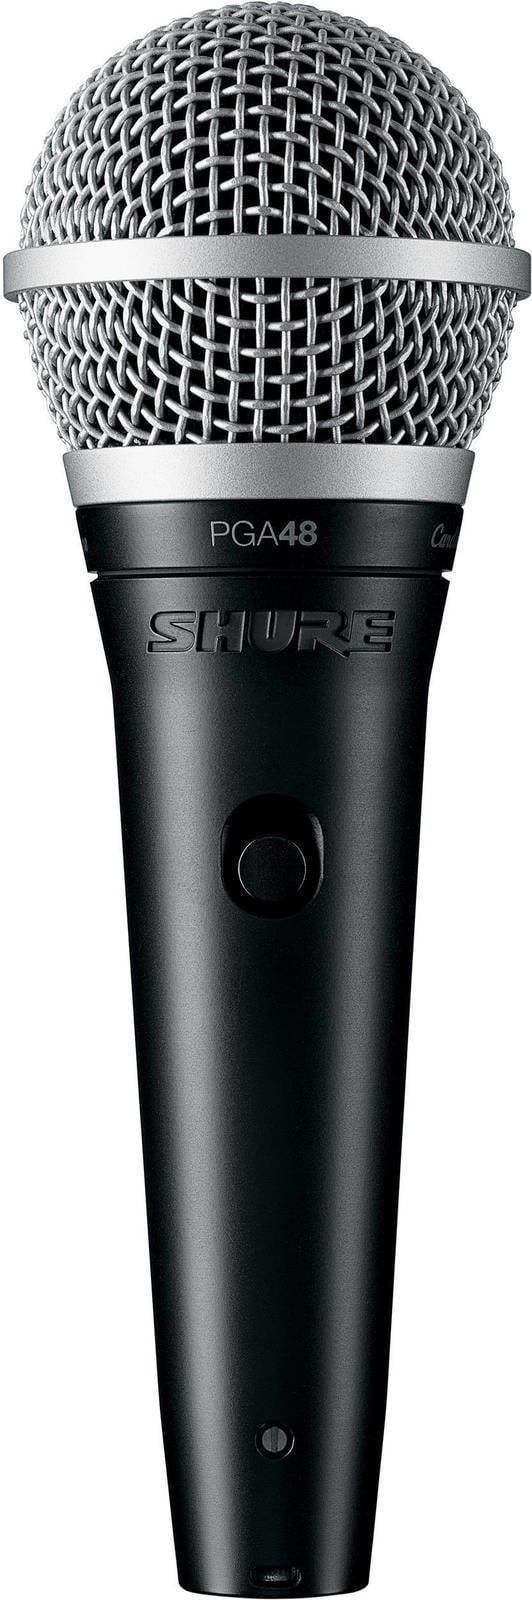 Microfone dinâmico para voz Shure PGA48-XLR-E Microfone dinâmico para voz